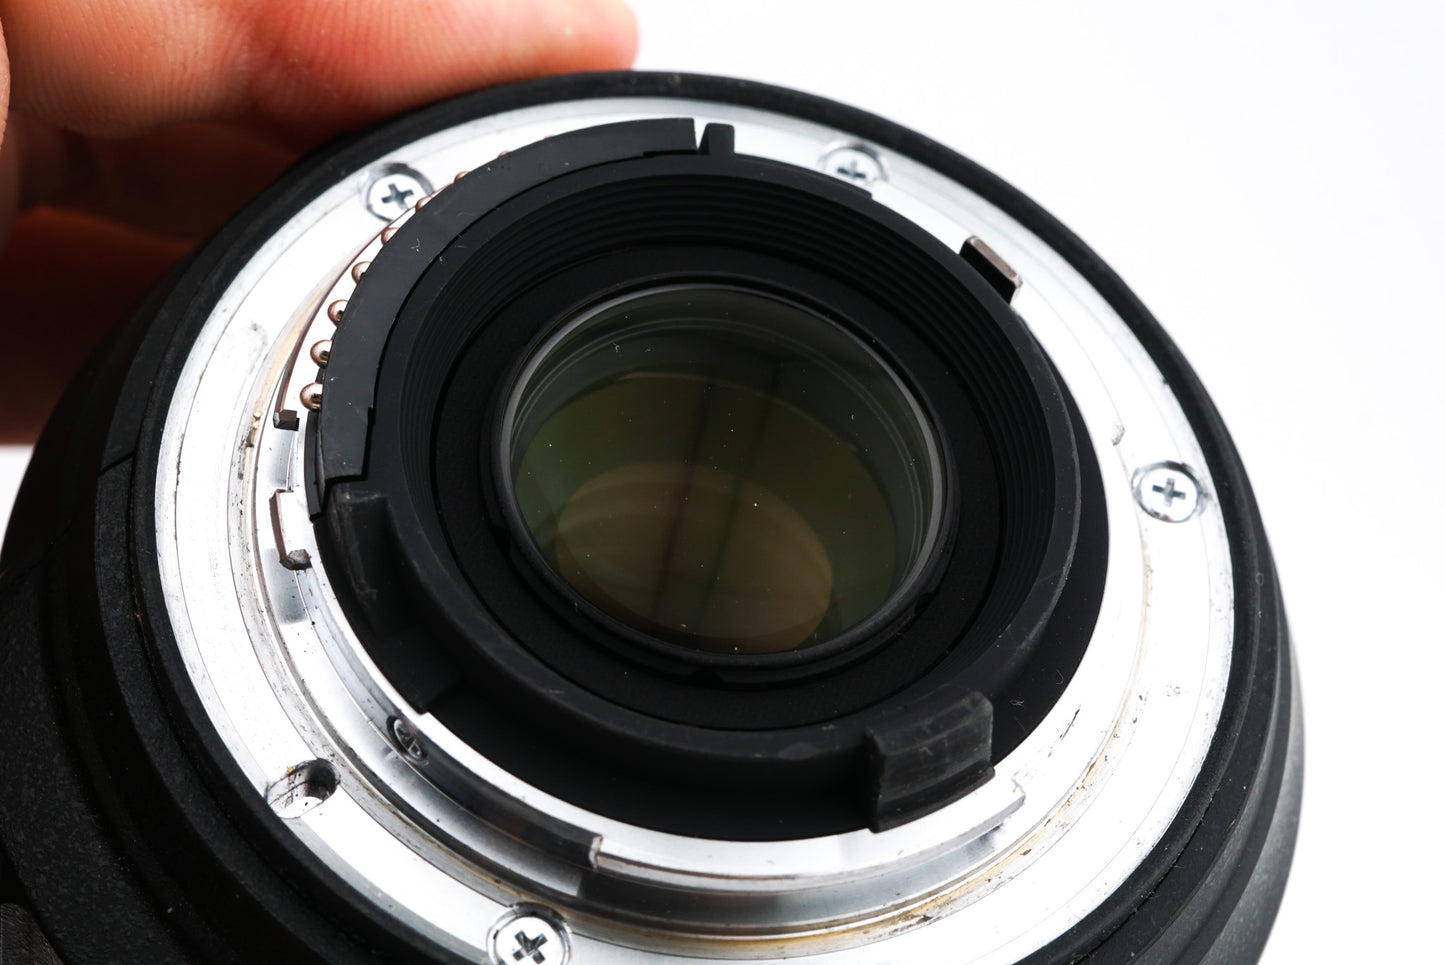 Nikon 18-200mm f3.5-5.6 G ED VR II AF-S Nikkor